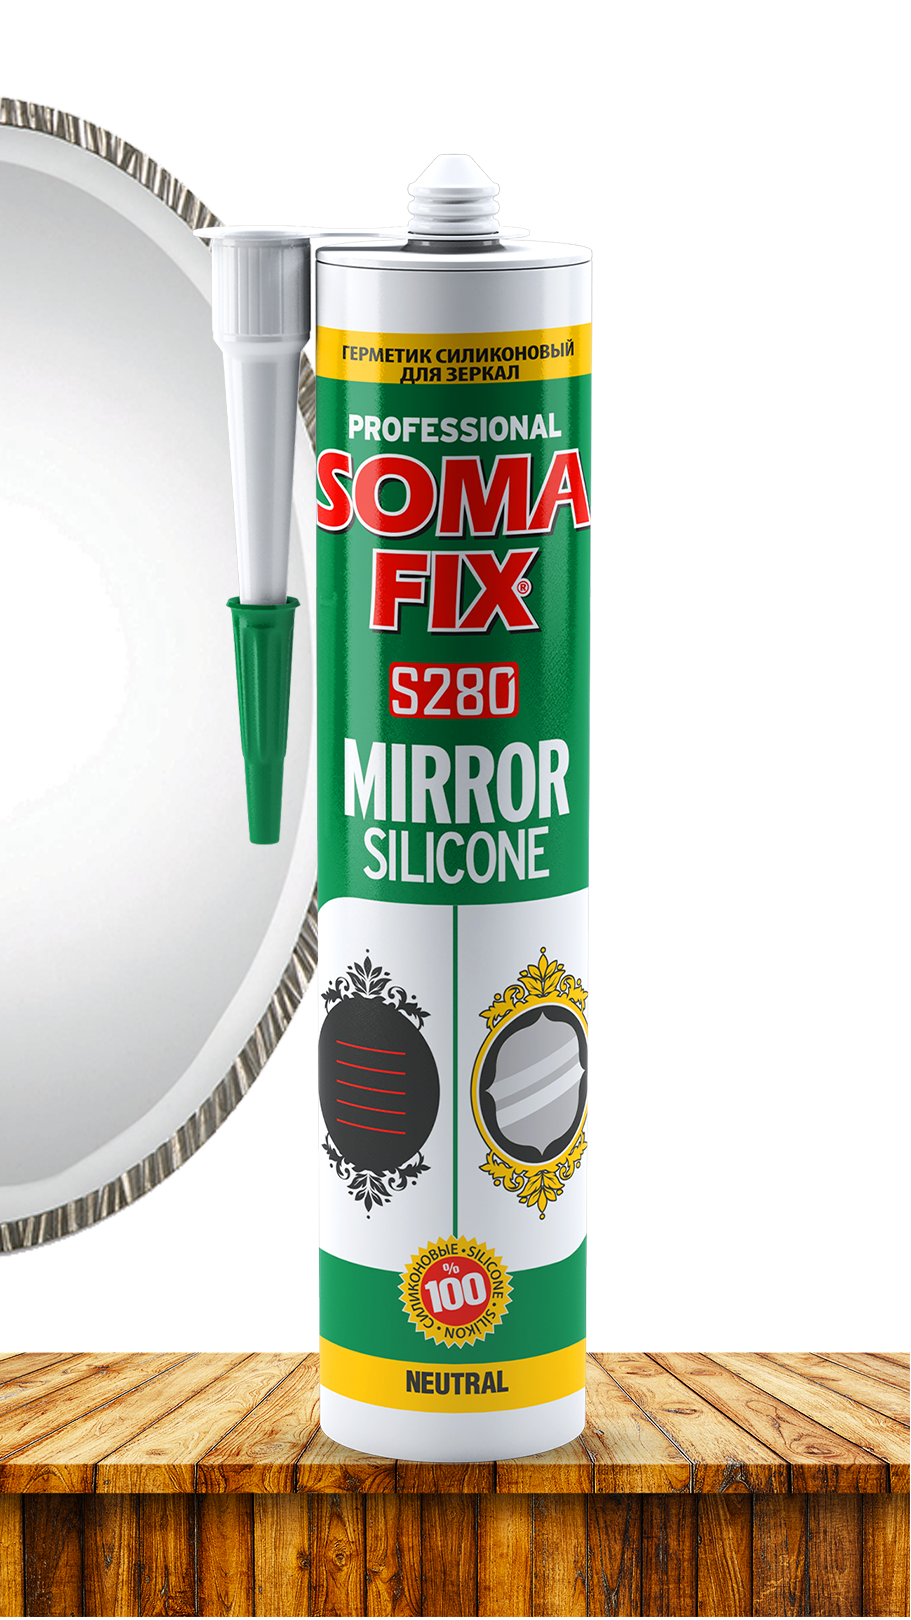 Силиконовый герметик SOMA FIX нейтральный (для зеркал) 280 мл., прозрачный S380. Купить от производителя по отличной цене